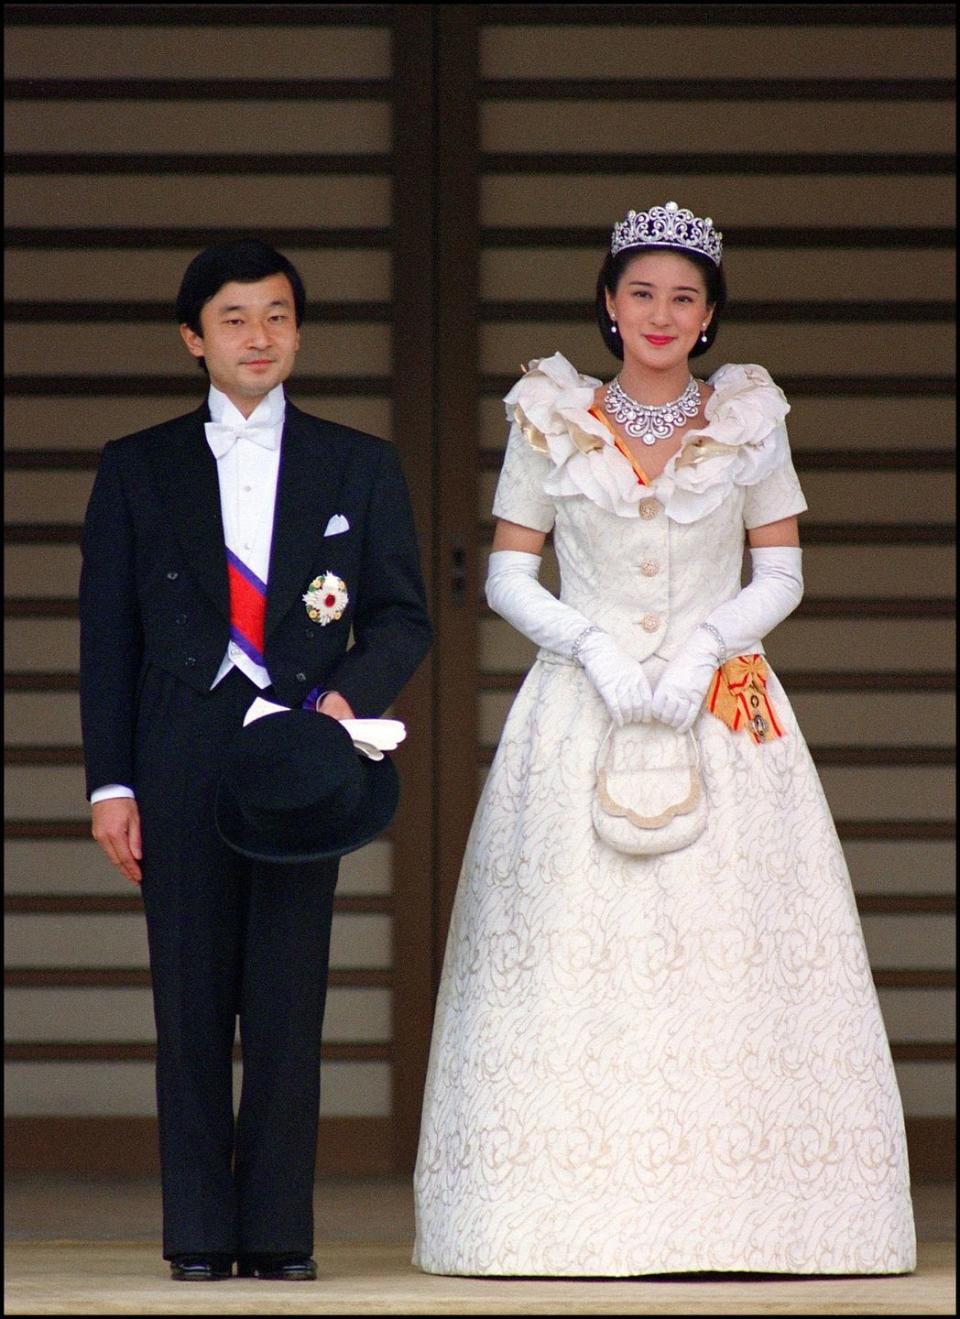 Emperor Naruhito and Empress Masako